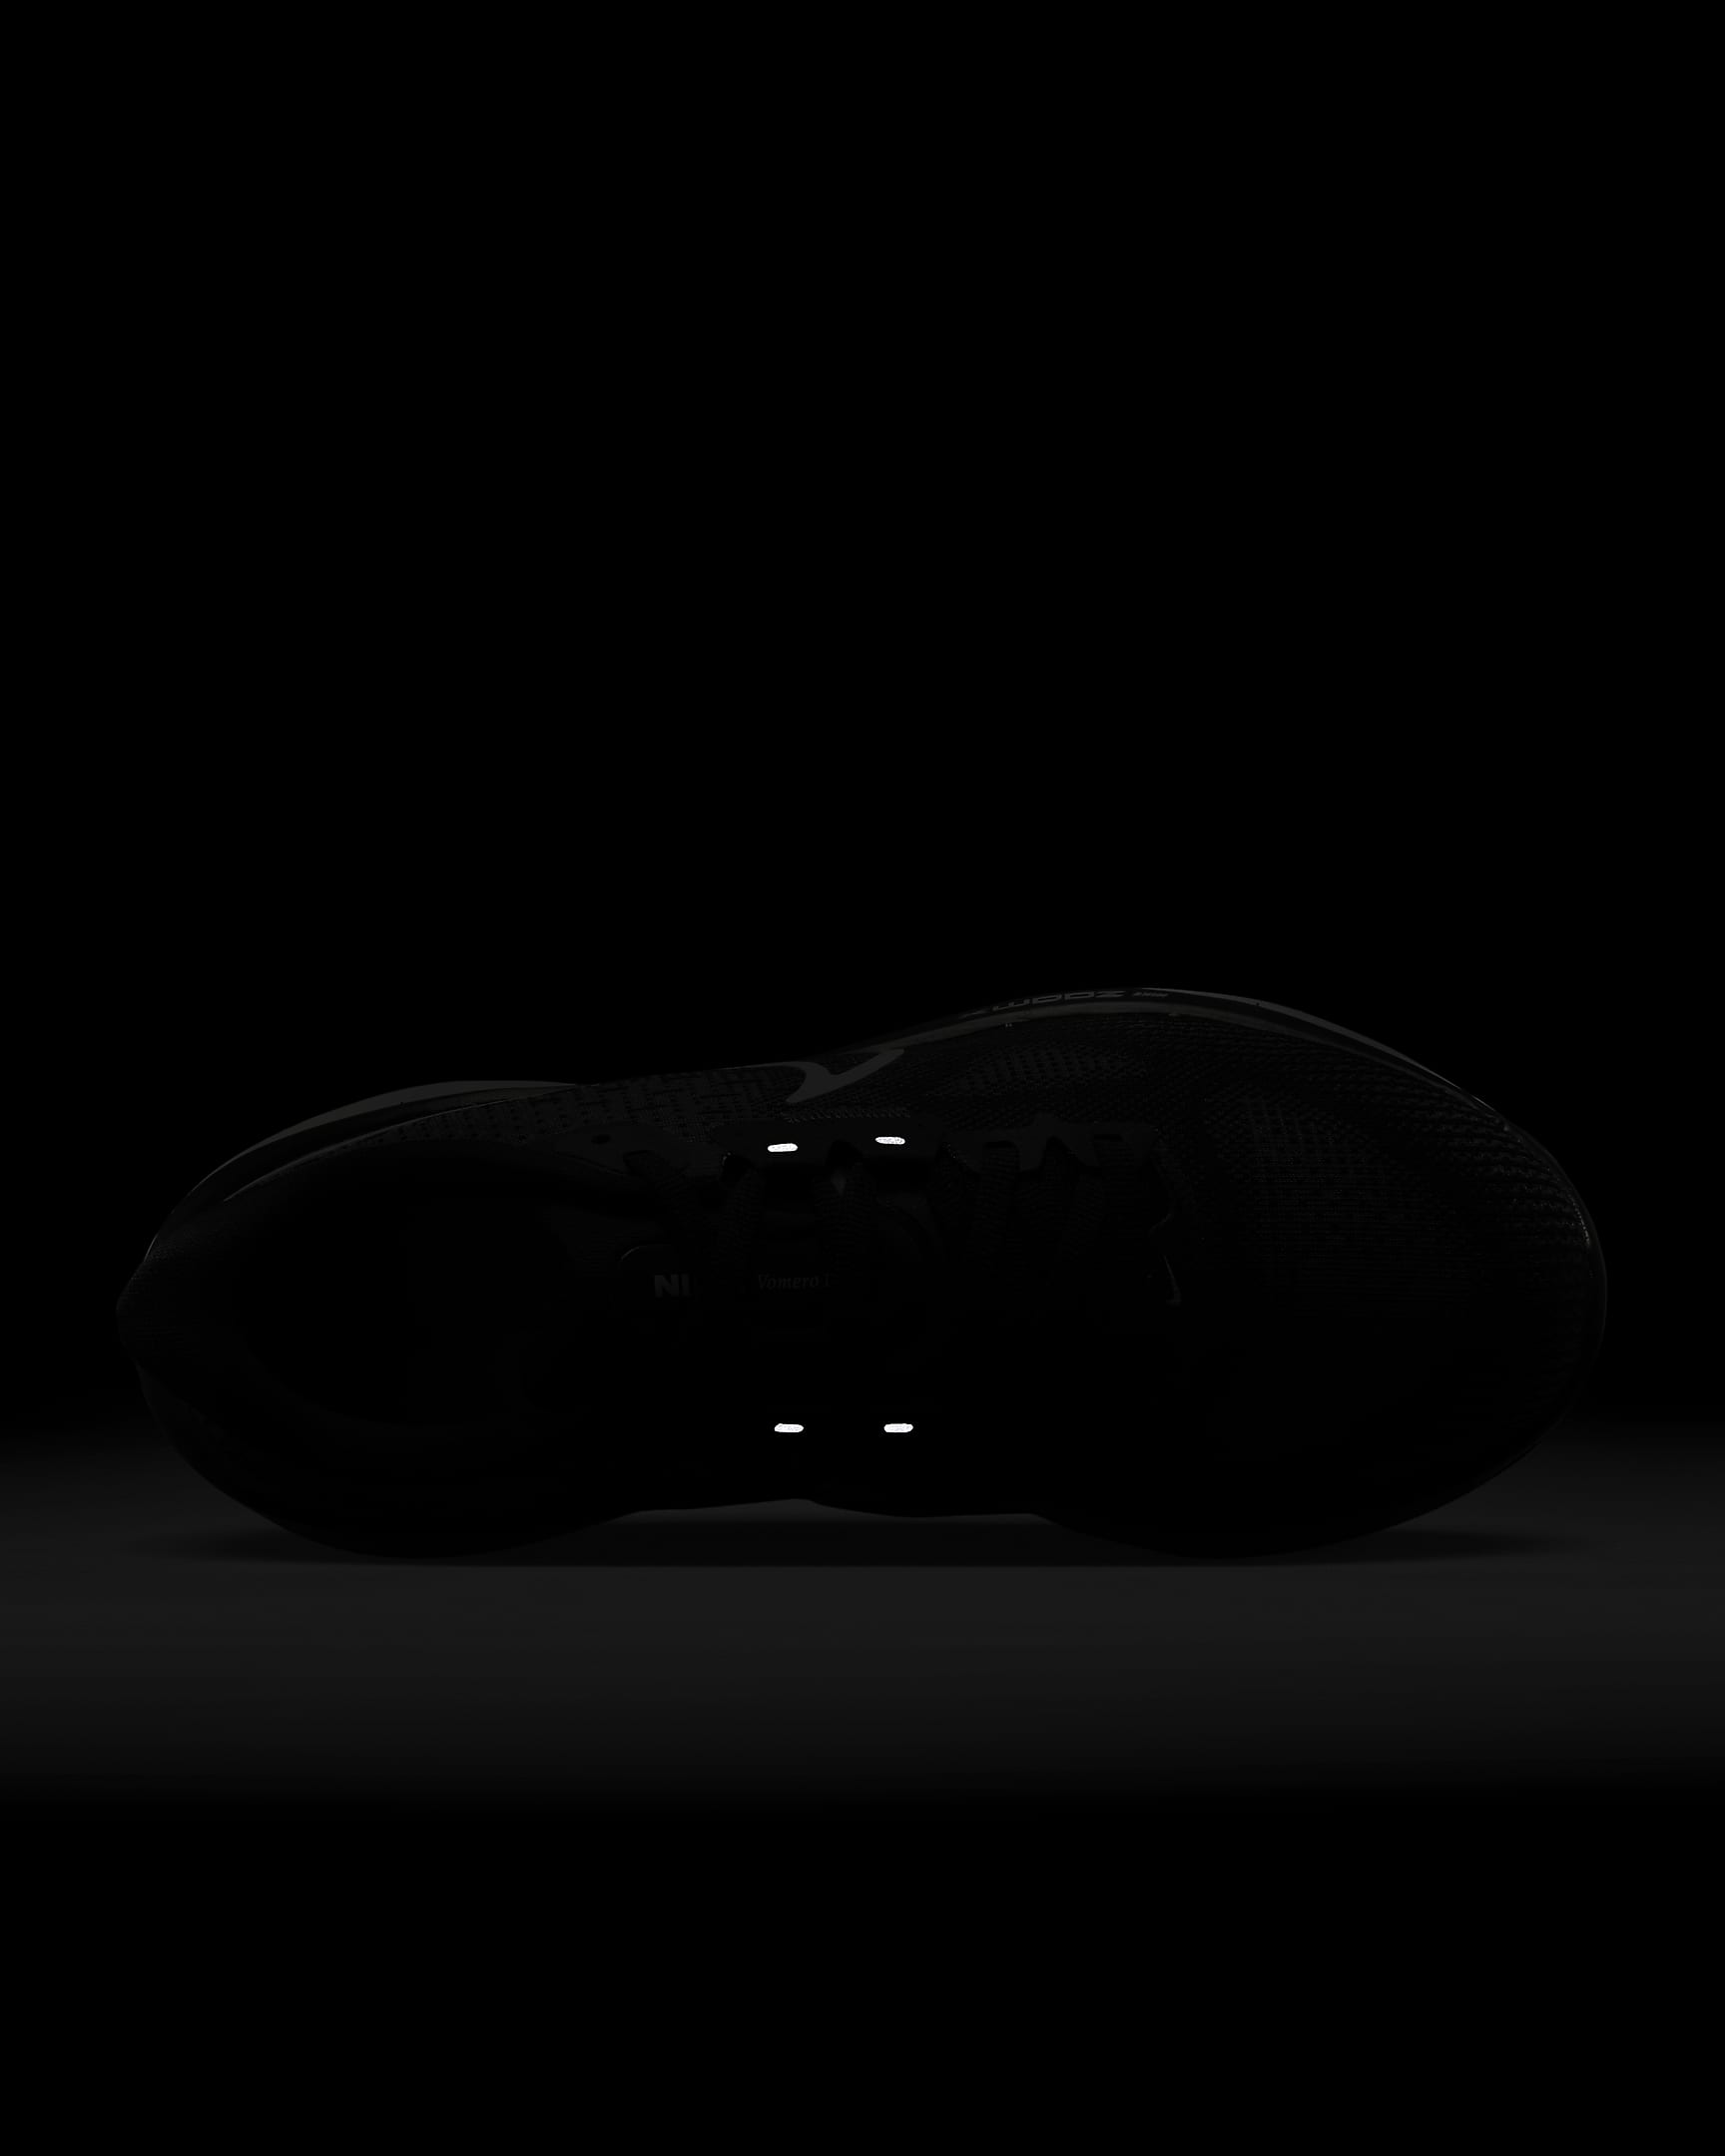 Chaussure de running sur route Nike Vomero 17 pour femme - Noir/Anthracite/Blanc